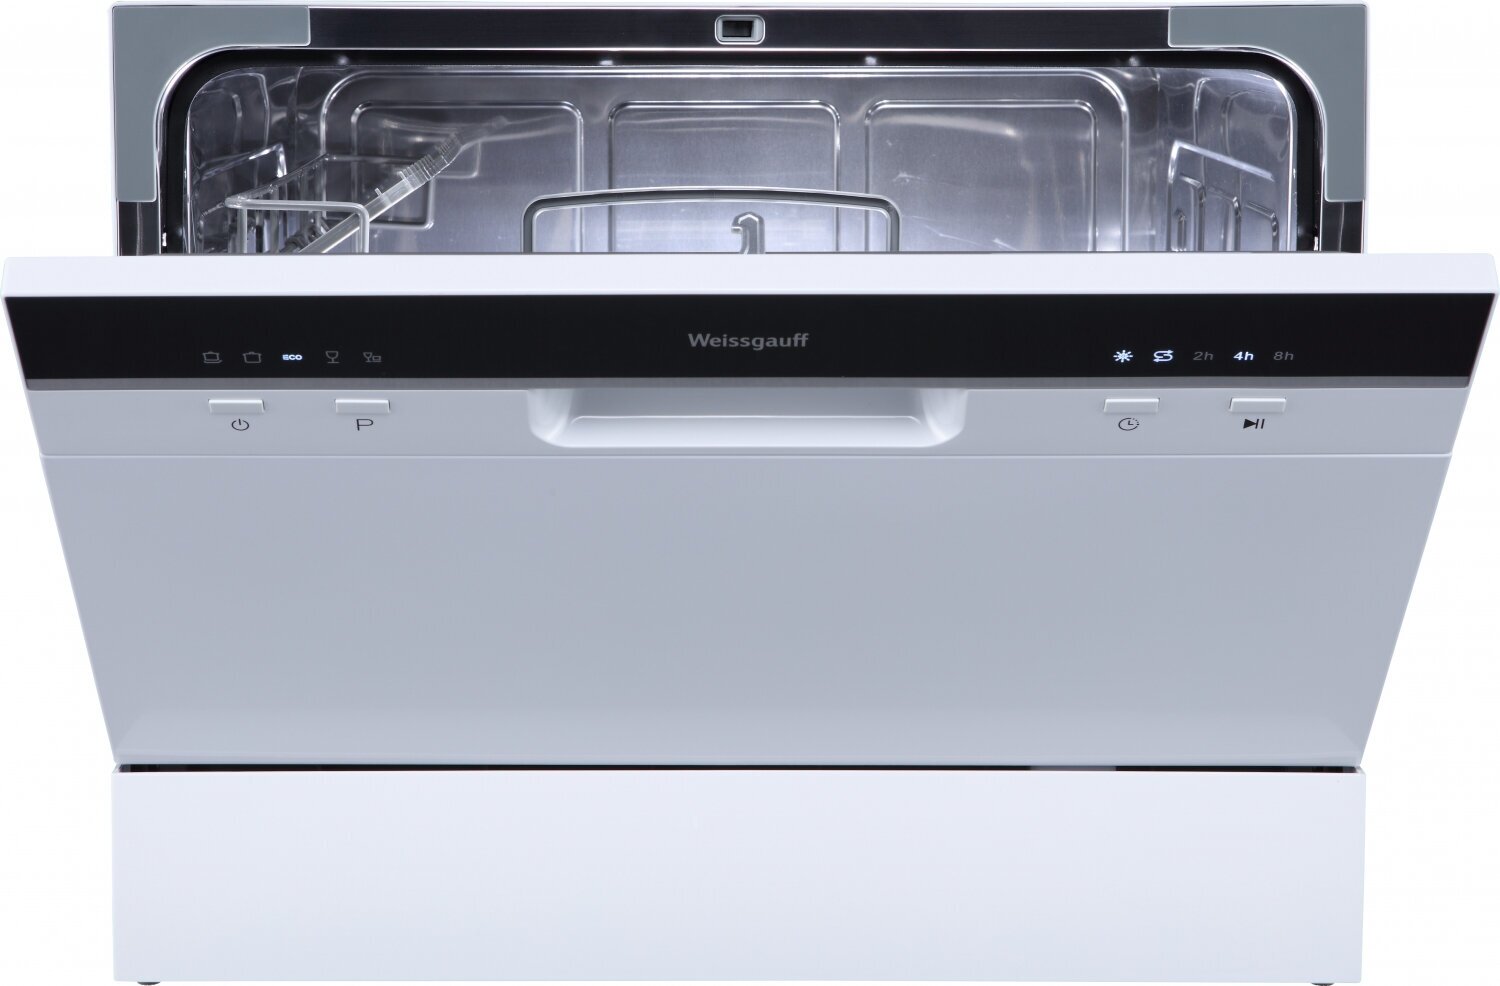 Настольная посудомоечная машина Weissgauff TDW 4106 Led,3 года гарантии, 5 программ, быстрая, интенсивная, 6 комплектов посуды, LED-индикация, дозагрузка, таймер